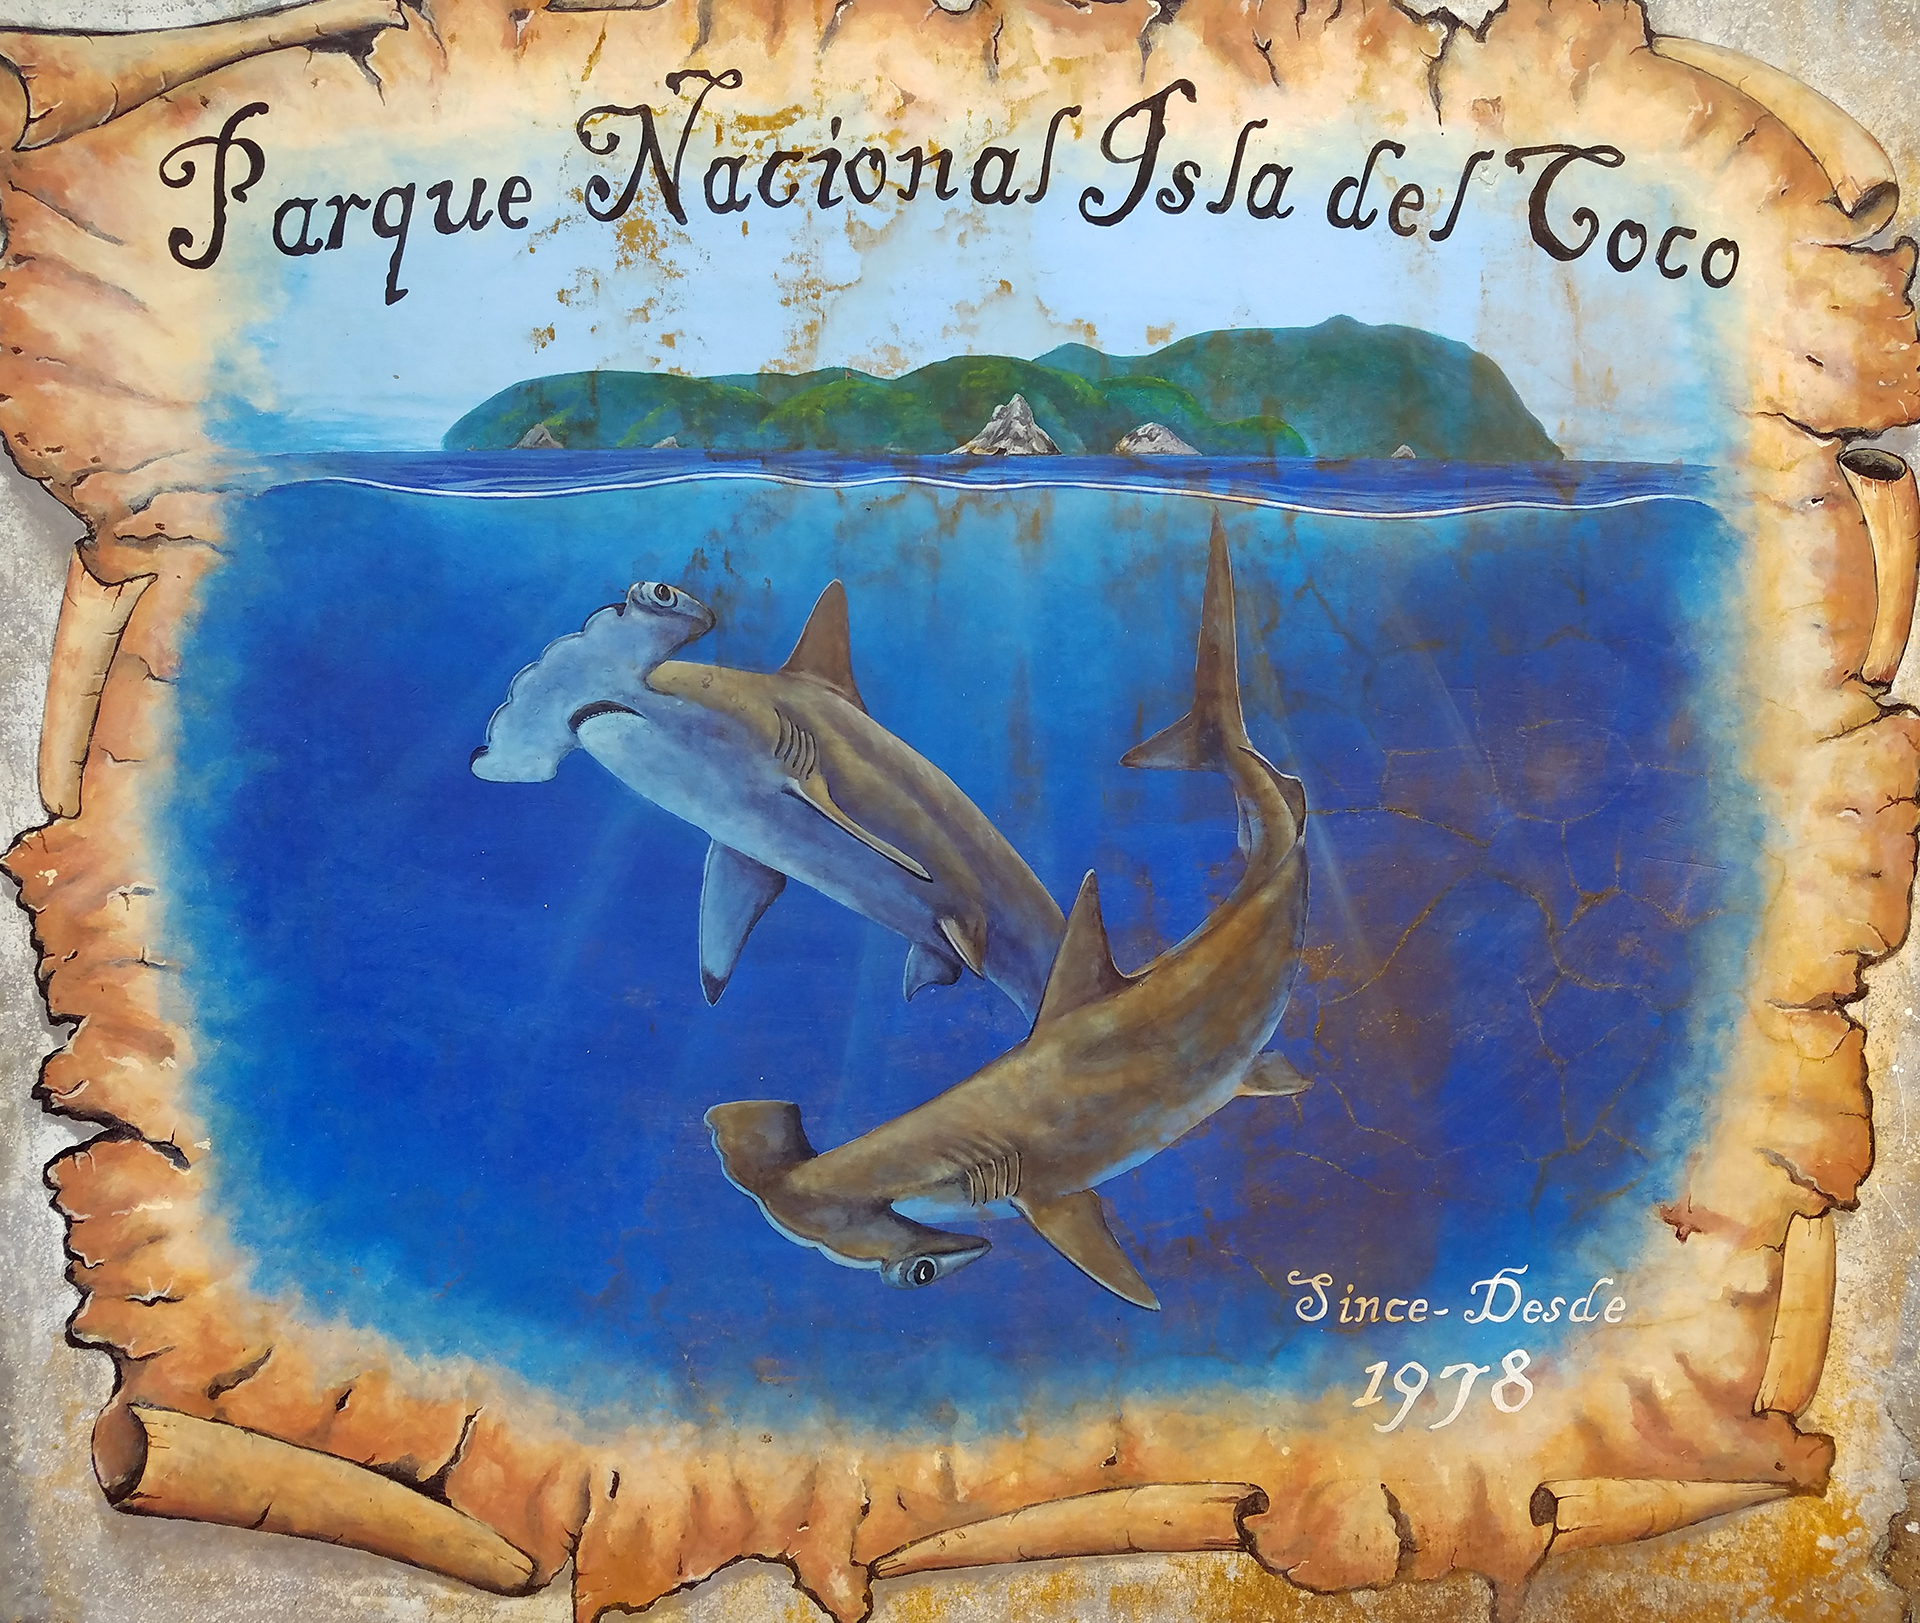 Parque Nacional Isla del Coco Desde 1978